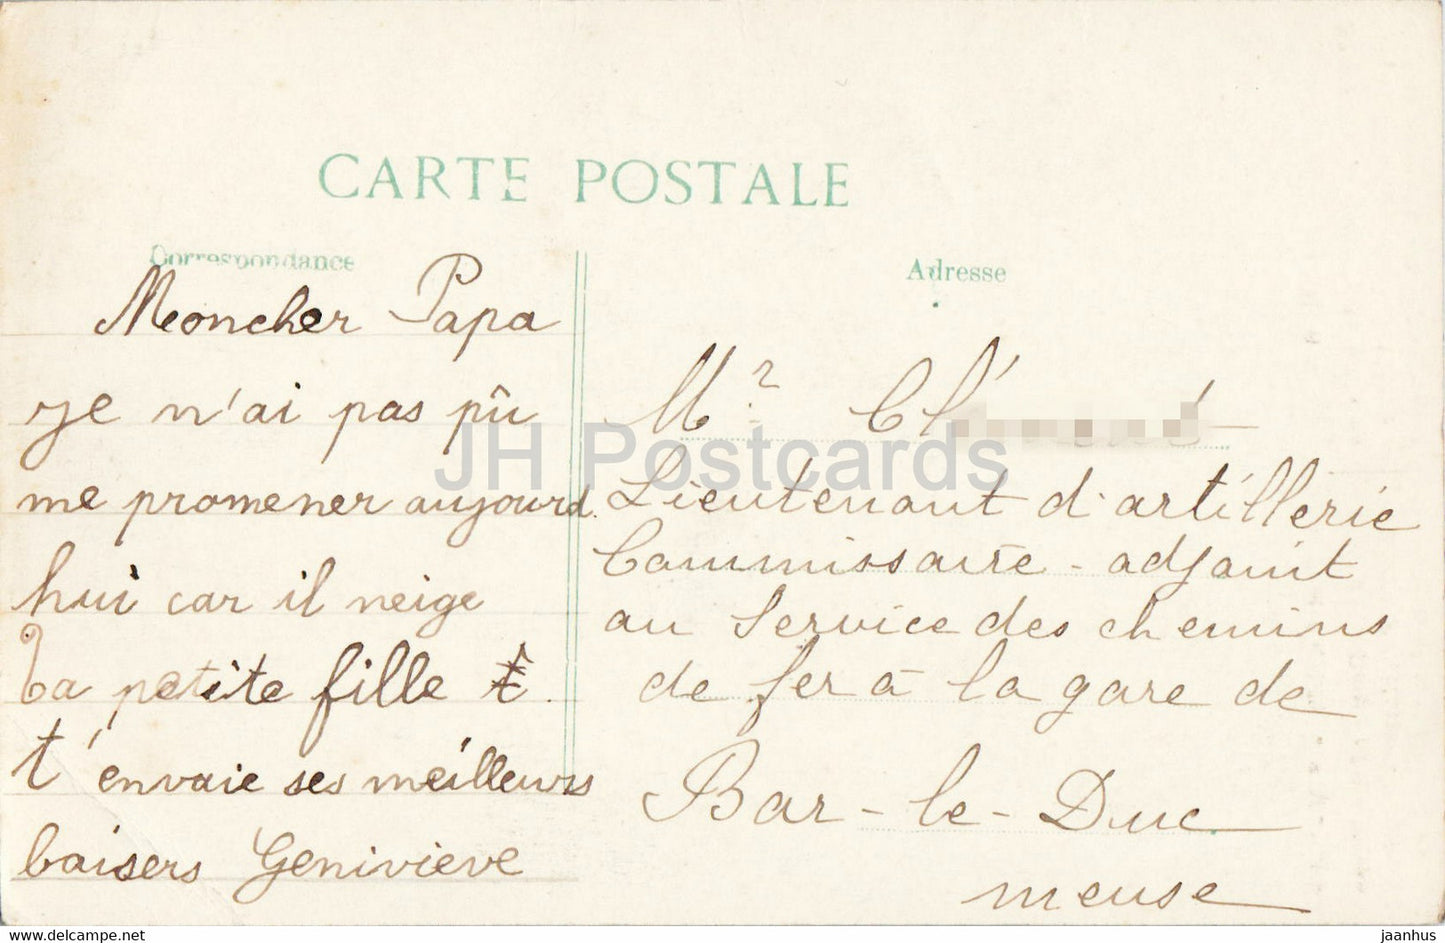 Maurupt - Interieur de l'eglise apres le bombardement - Bataille de la Marne 1914 - 37 - old postcard - France - used